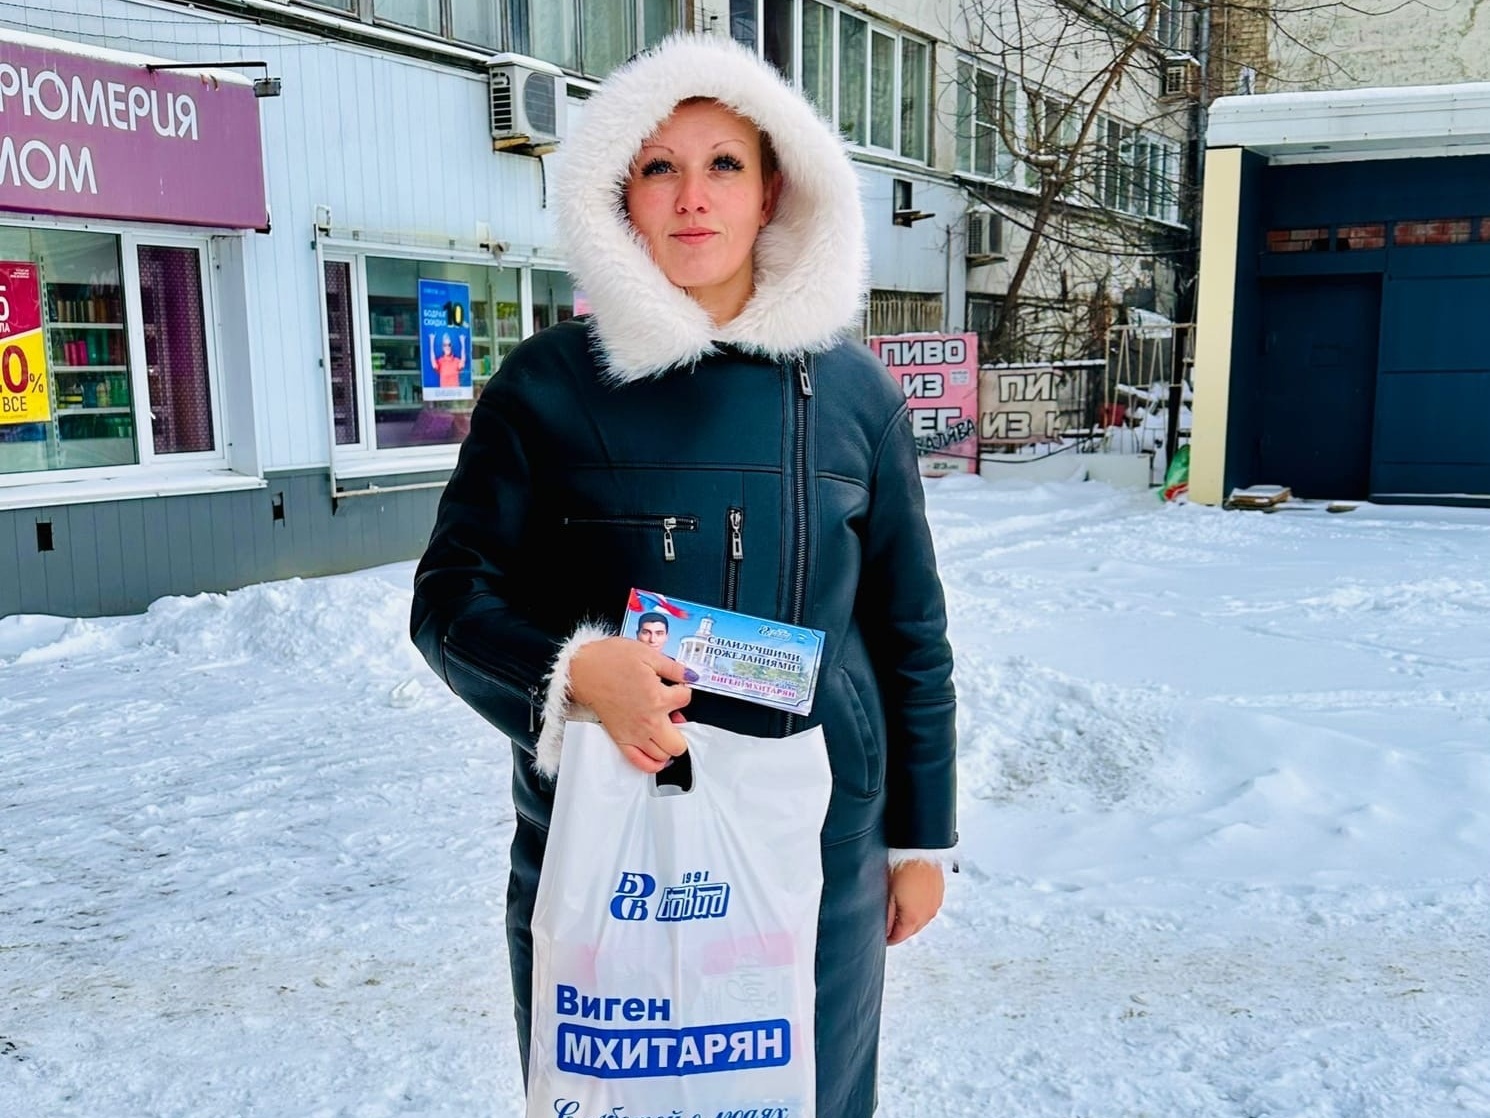 Депутат Челябинской городской Думы Виген Мхитарян поздравил женщин своего избирательного округа с праздником!